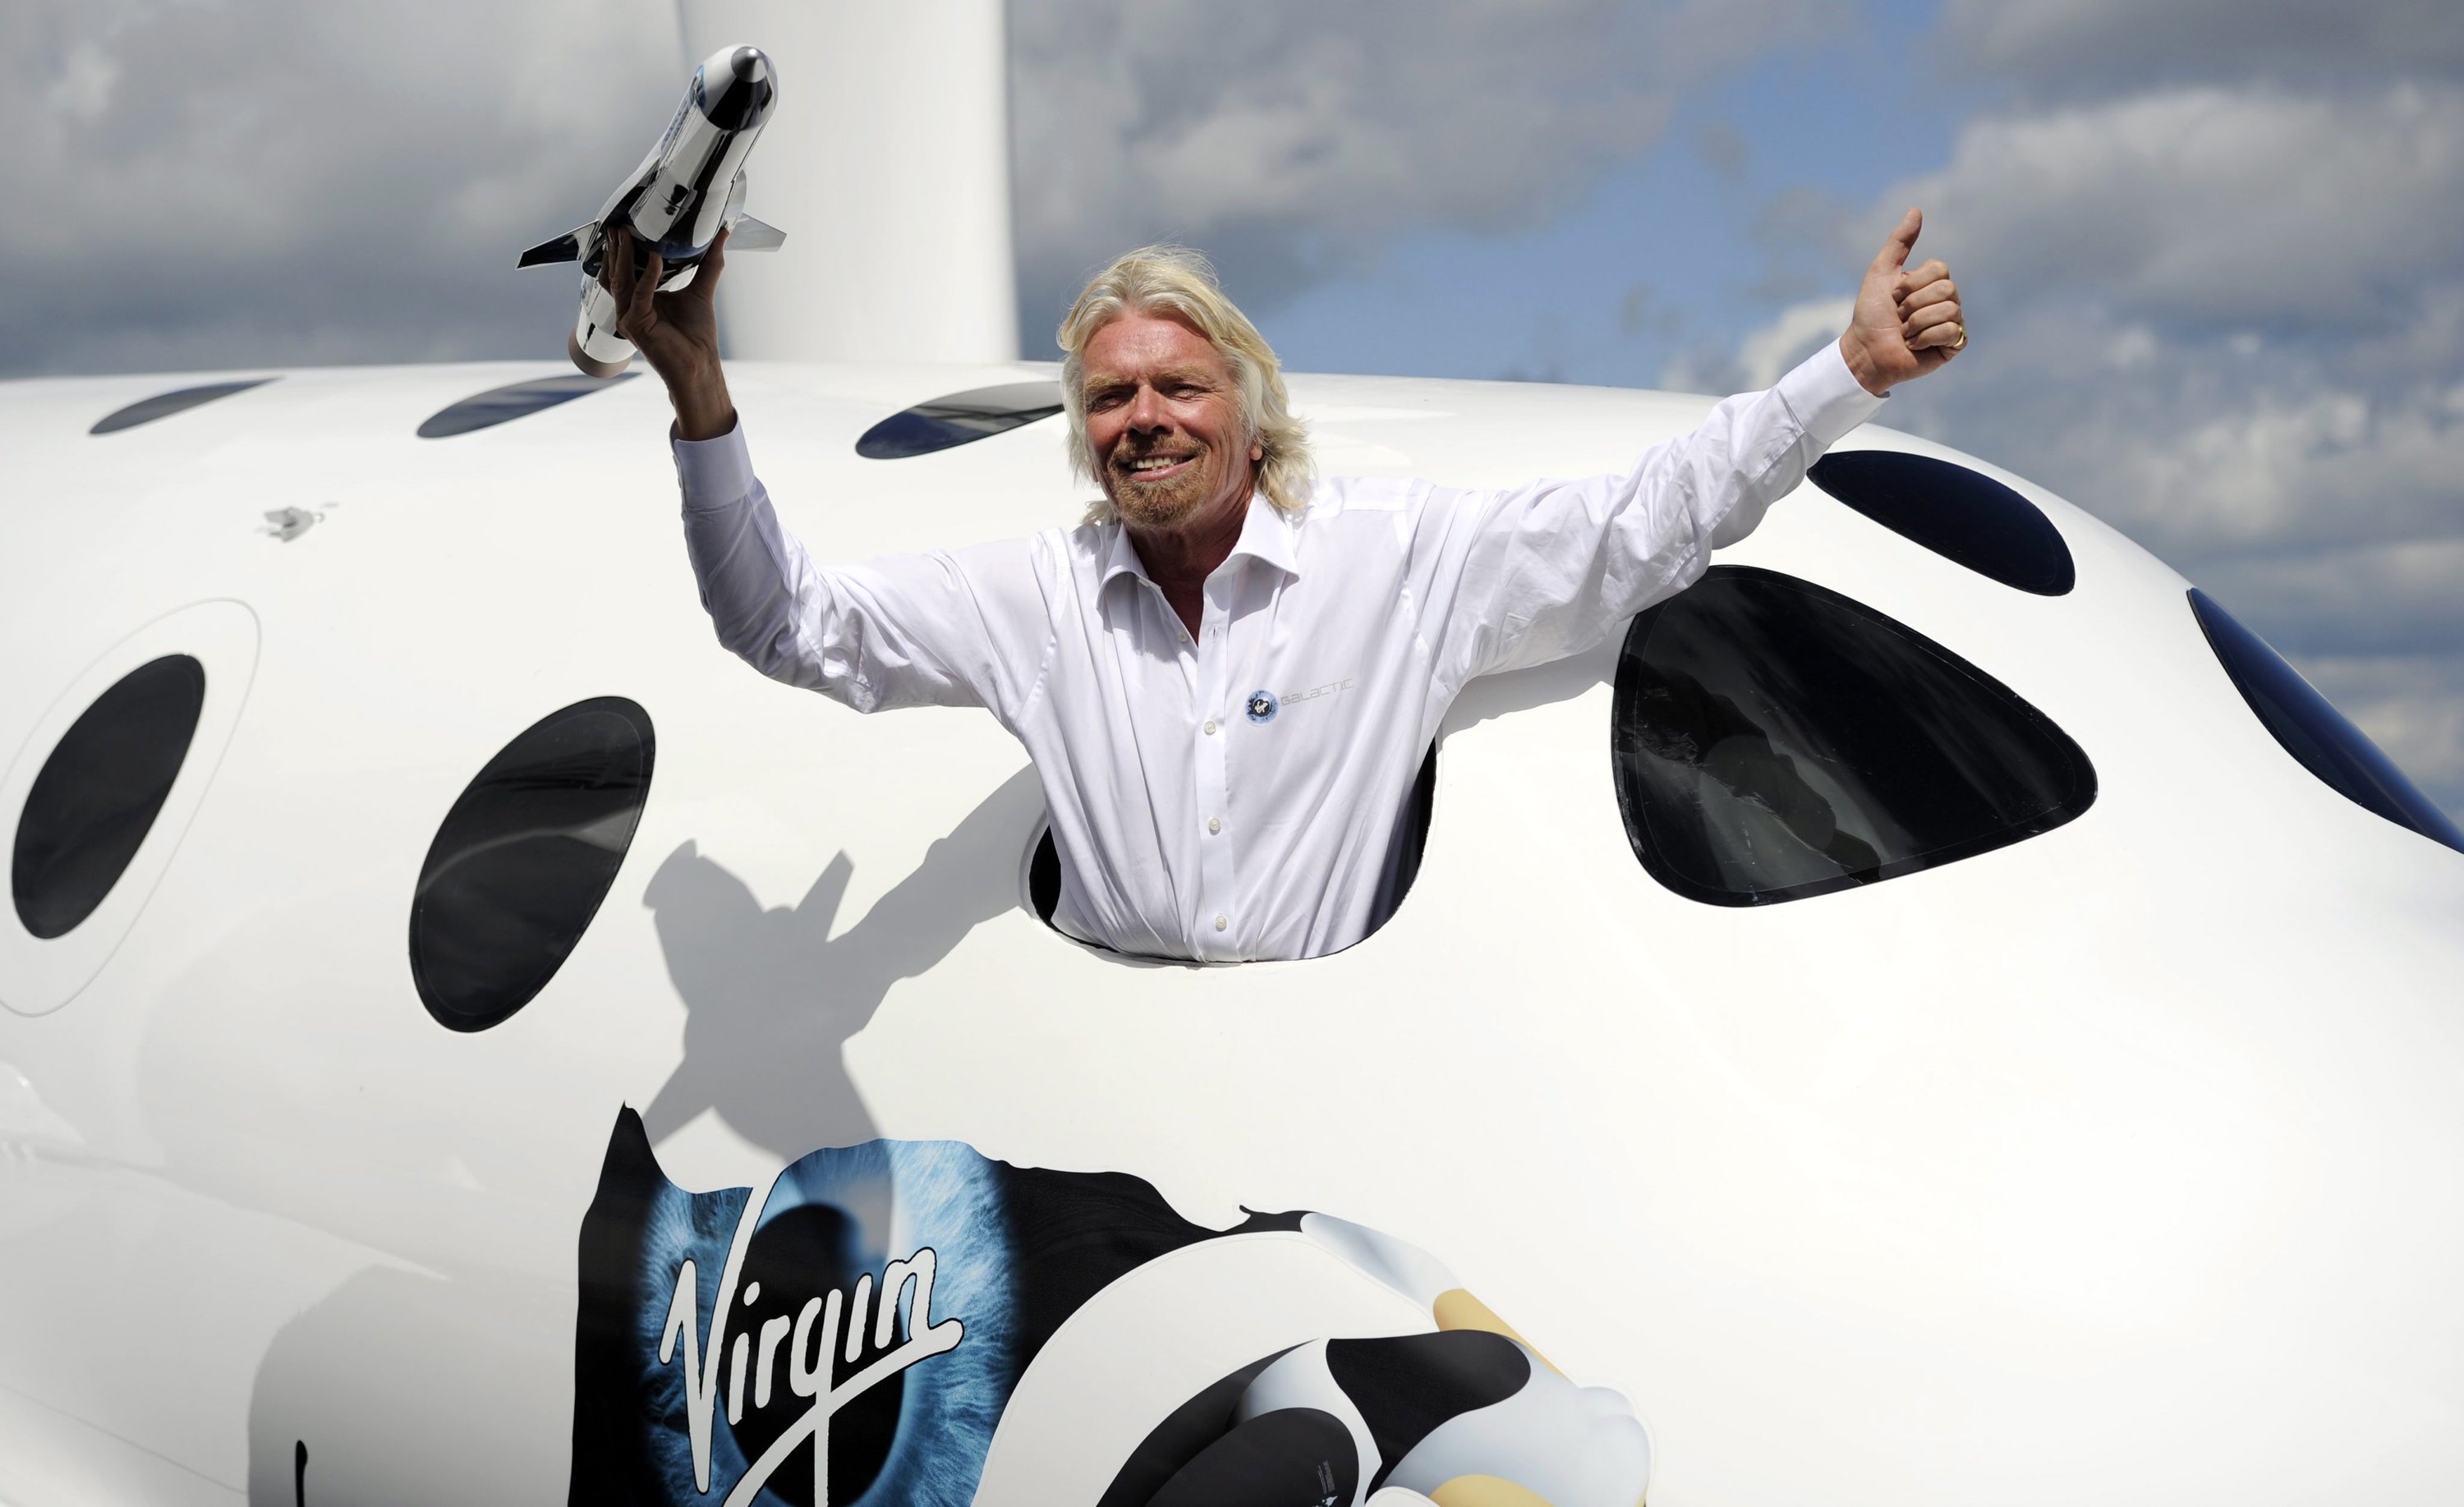 Sir Richard Branson posiert im Juli 2012 auf der Farnborough International Airshow für die Fotografen. Vom Absturz der SpaceShipTwo zeigte sich der Milliardär betroffen, seinen Traum vom Weltraumtourismus will er deshalb aber nicht aufgeben. 